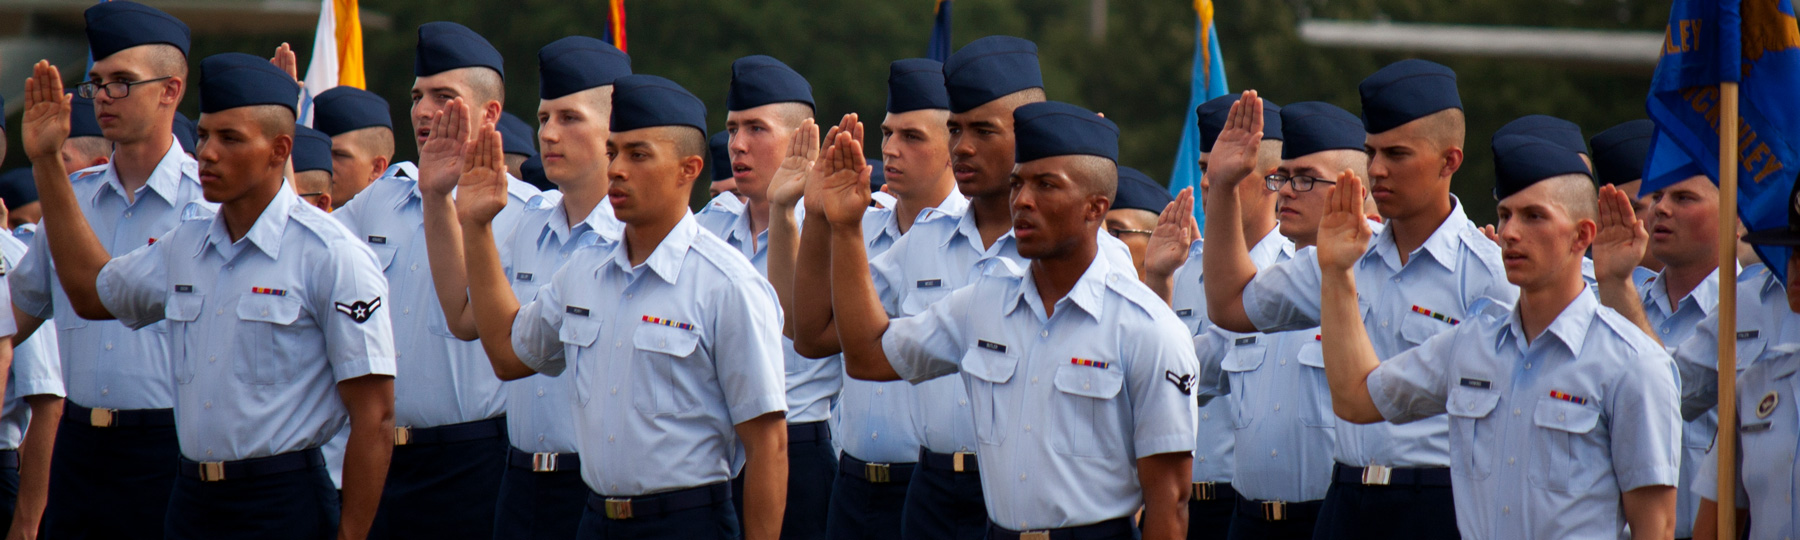 U.S. military members salute